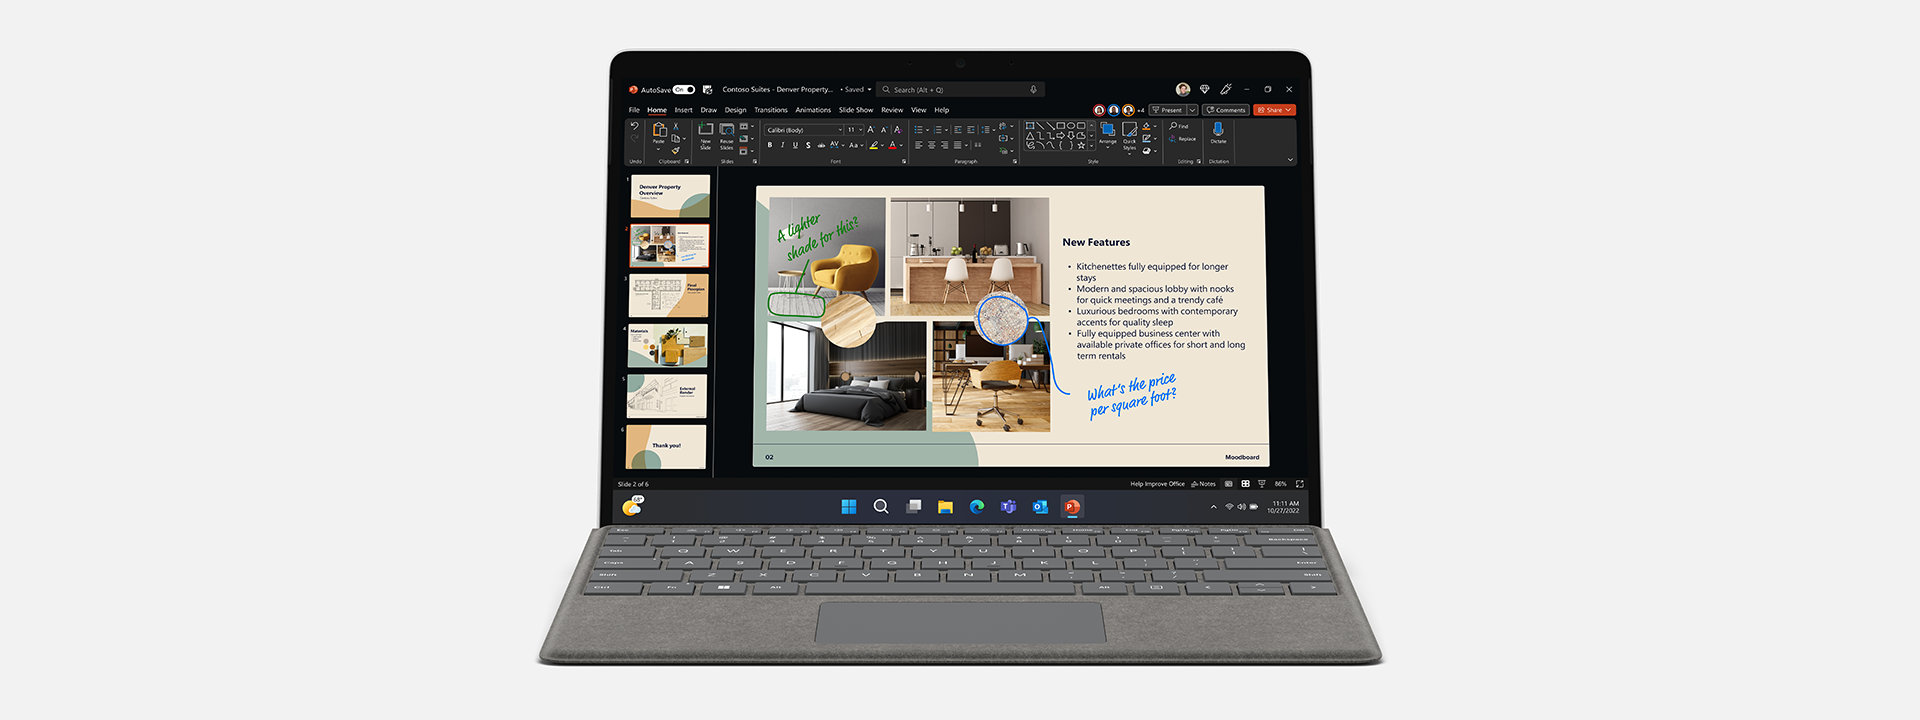 O Surface Pro 9 para Empresas com o Microsoft PowerPoint no ecrã.